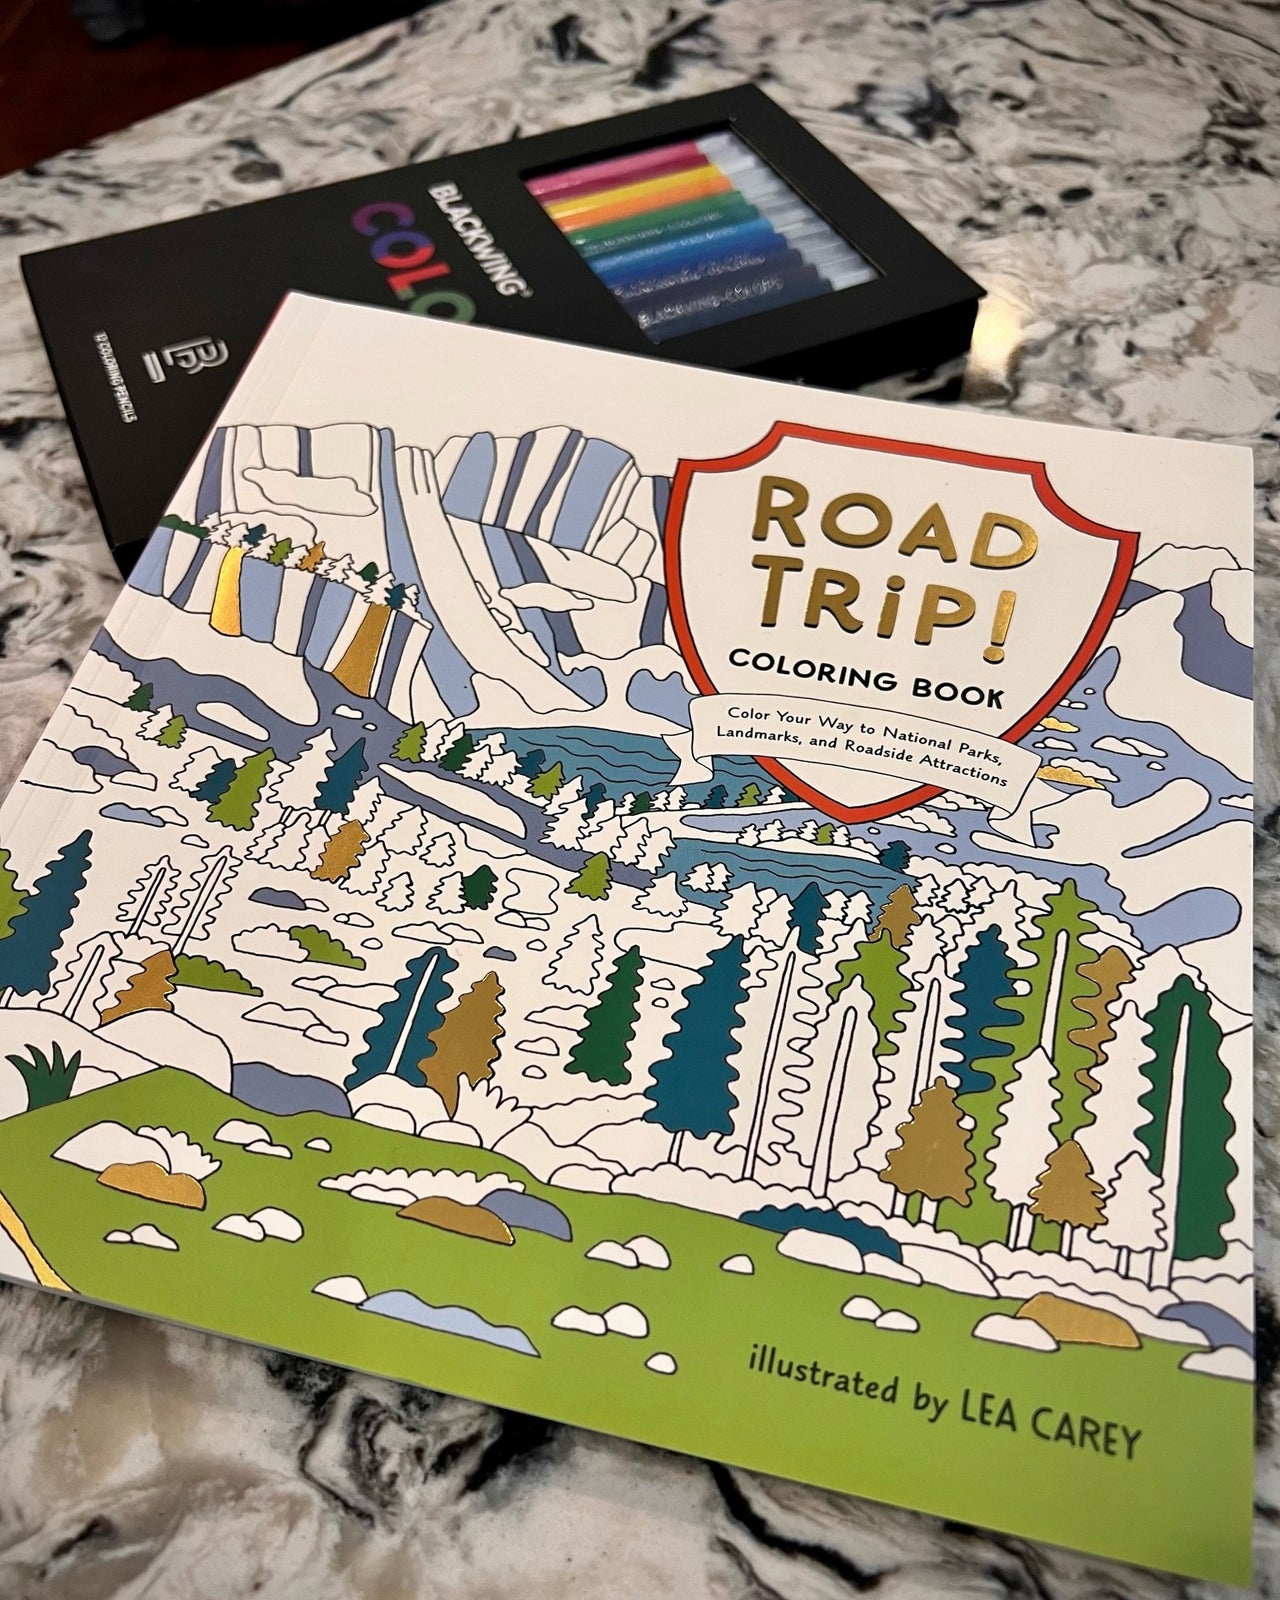 Road Trip! Coloring Book